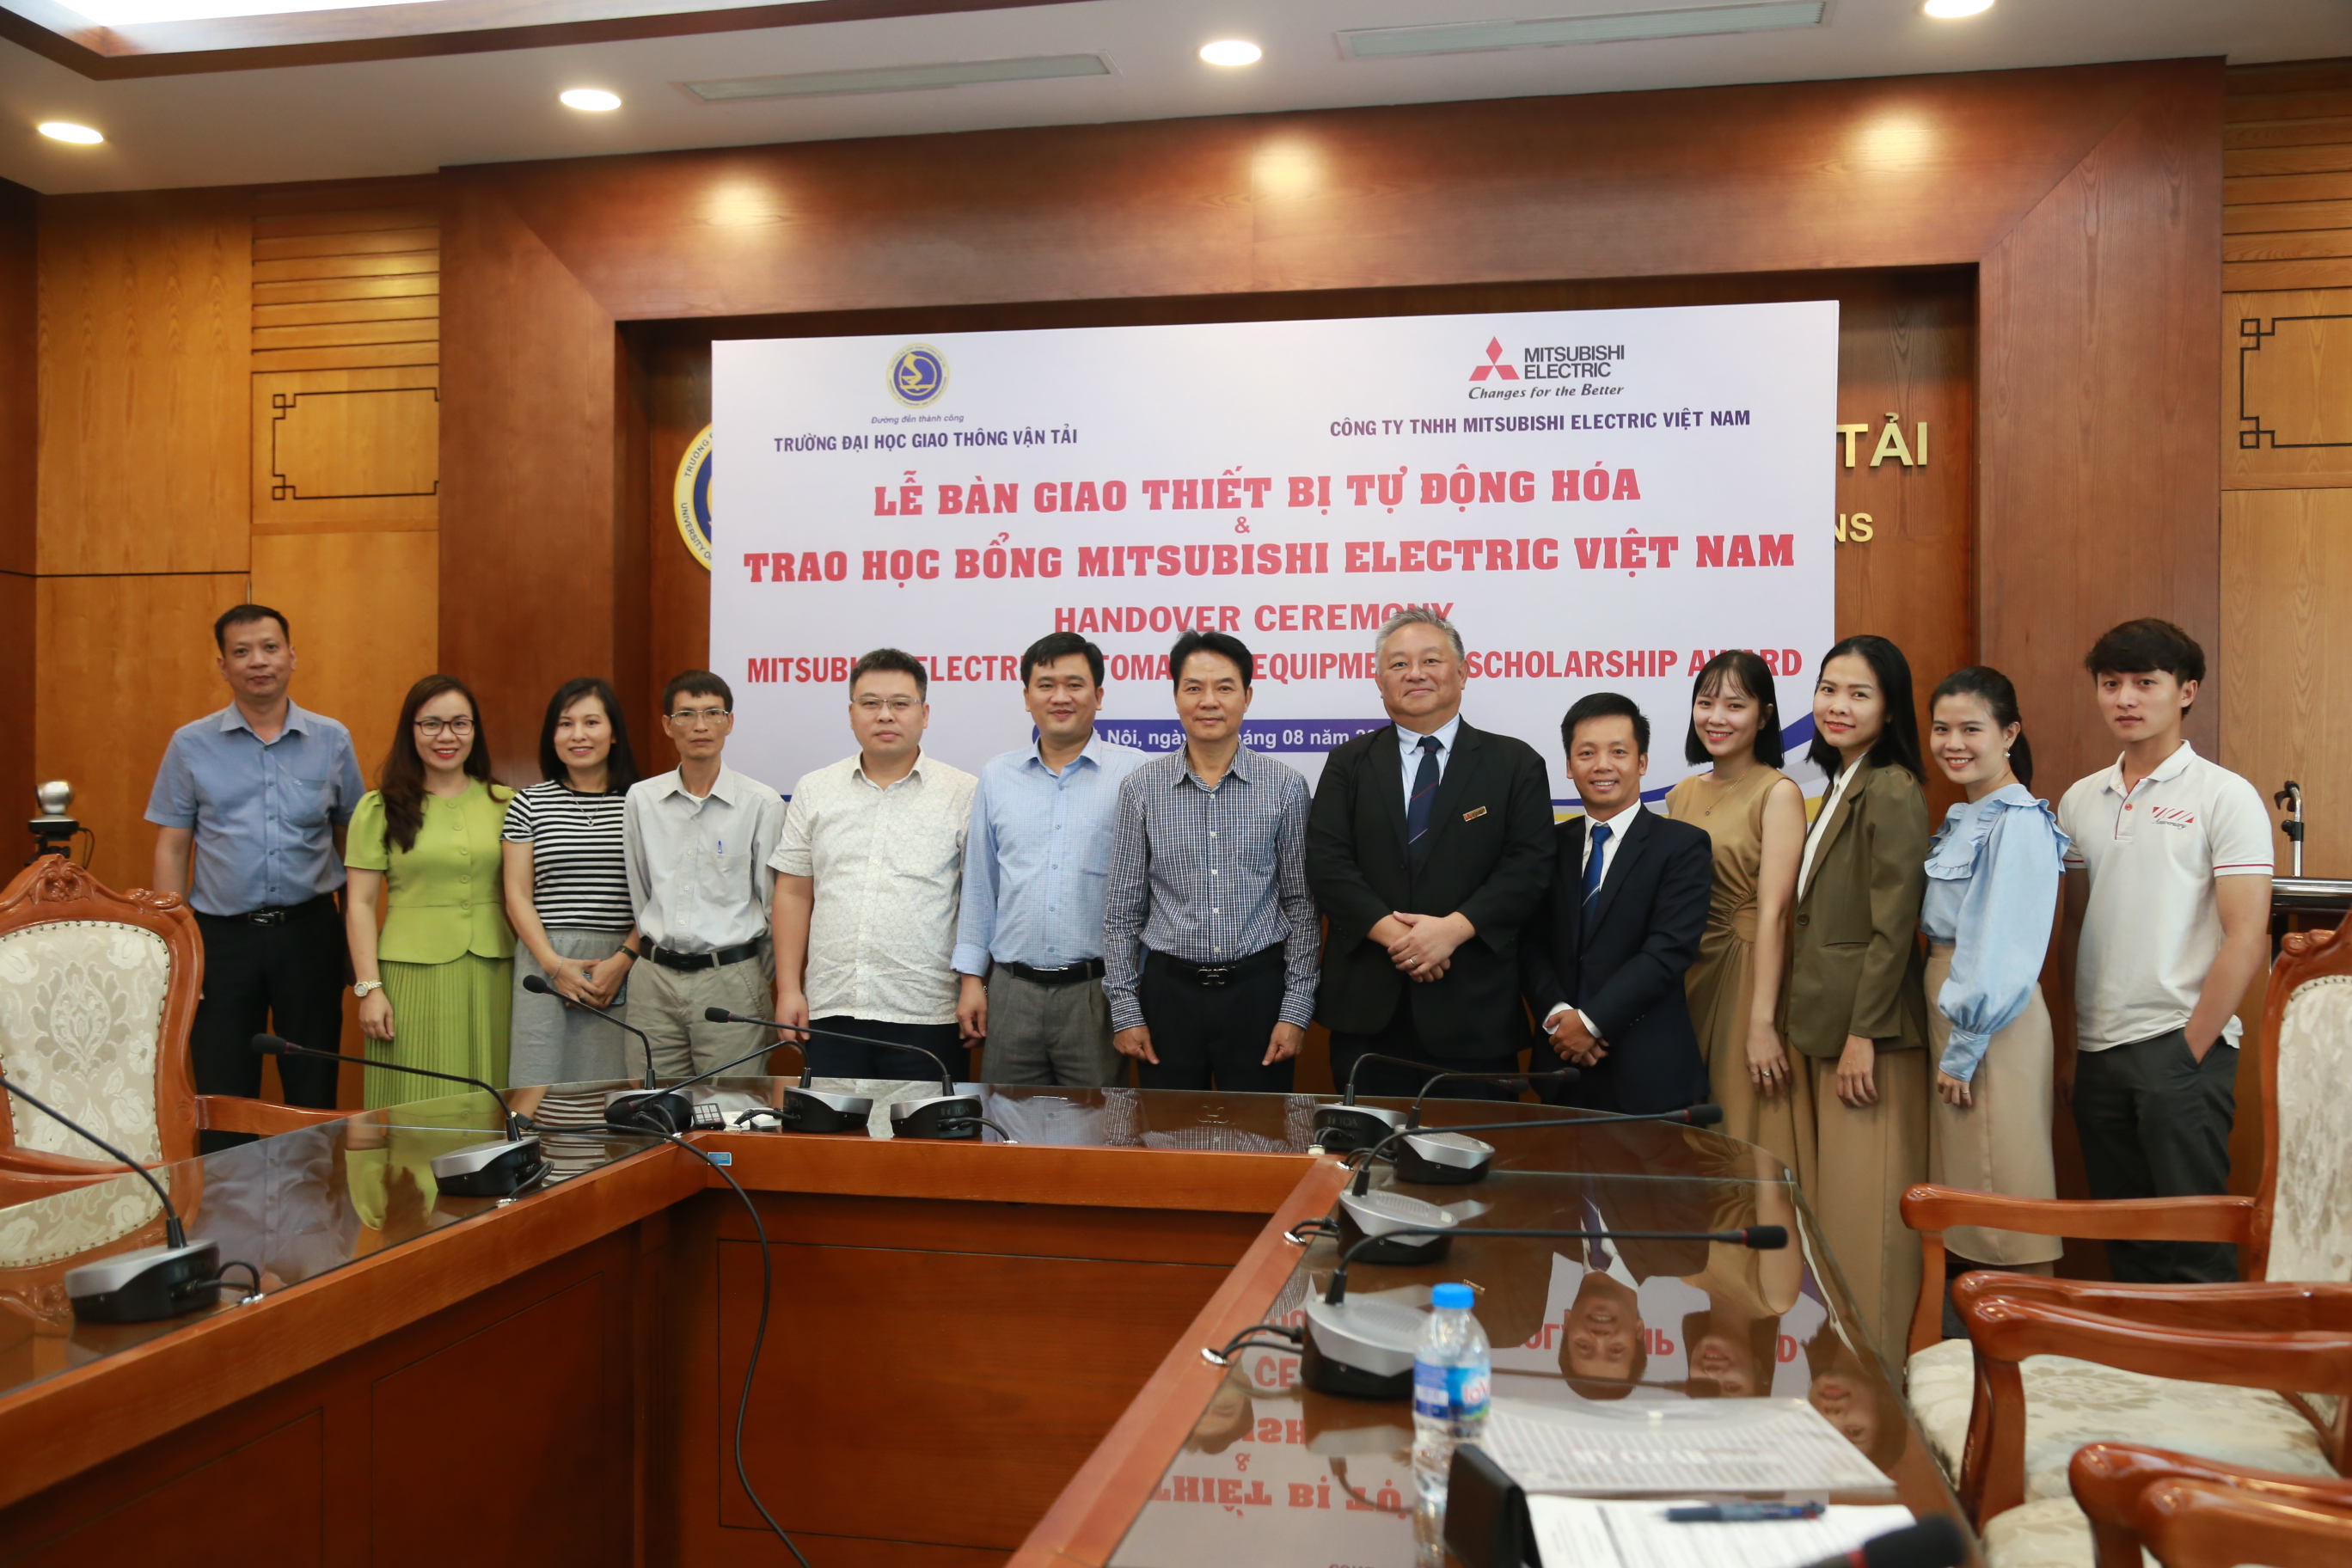 Khai trương phòng thí nghiệm Mitsubishi Electric FA và trao học bổng Mitsubishi Electric Việt Nam cho sinh viên Khoa Điện-Điện tử Trường ĐH GTVT